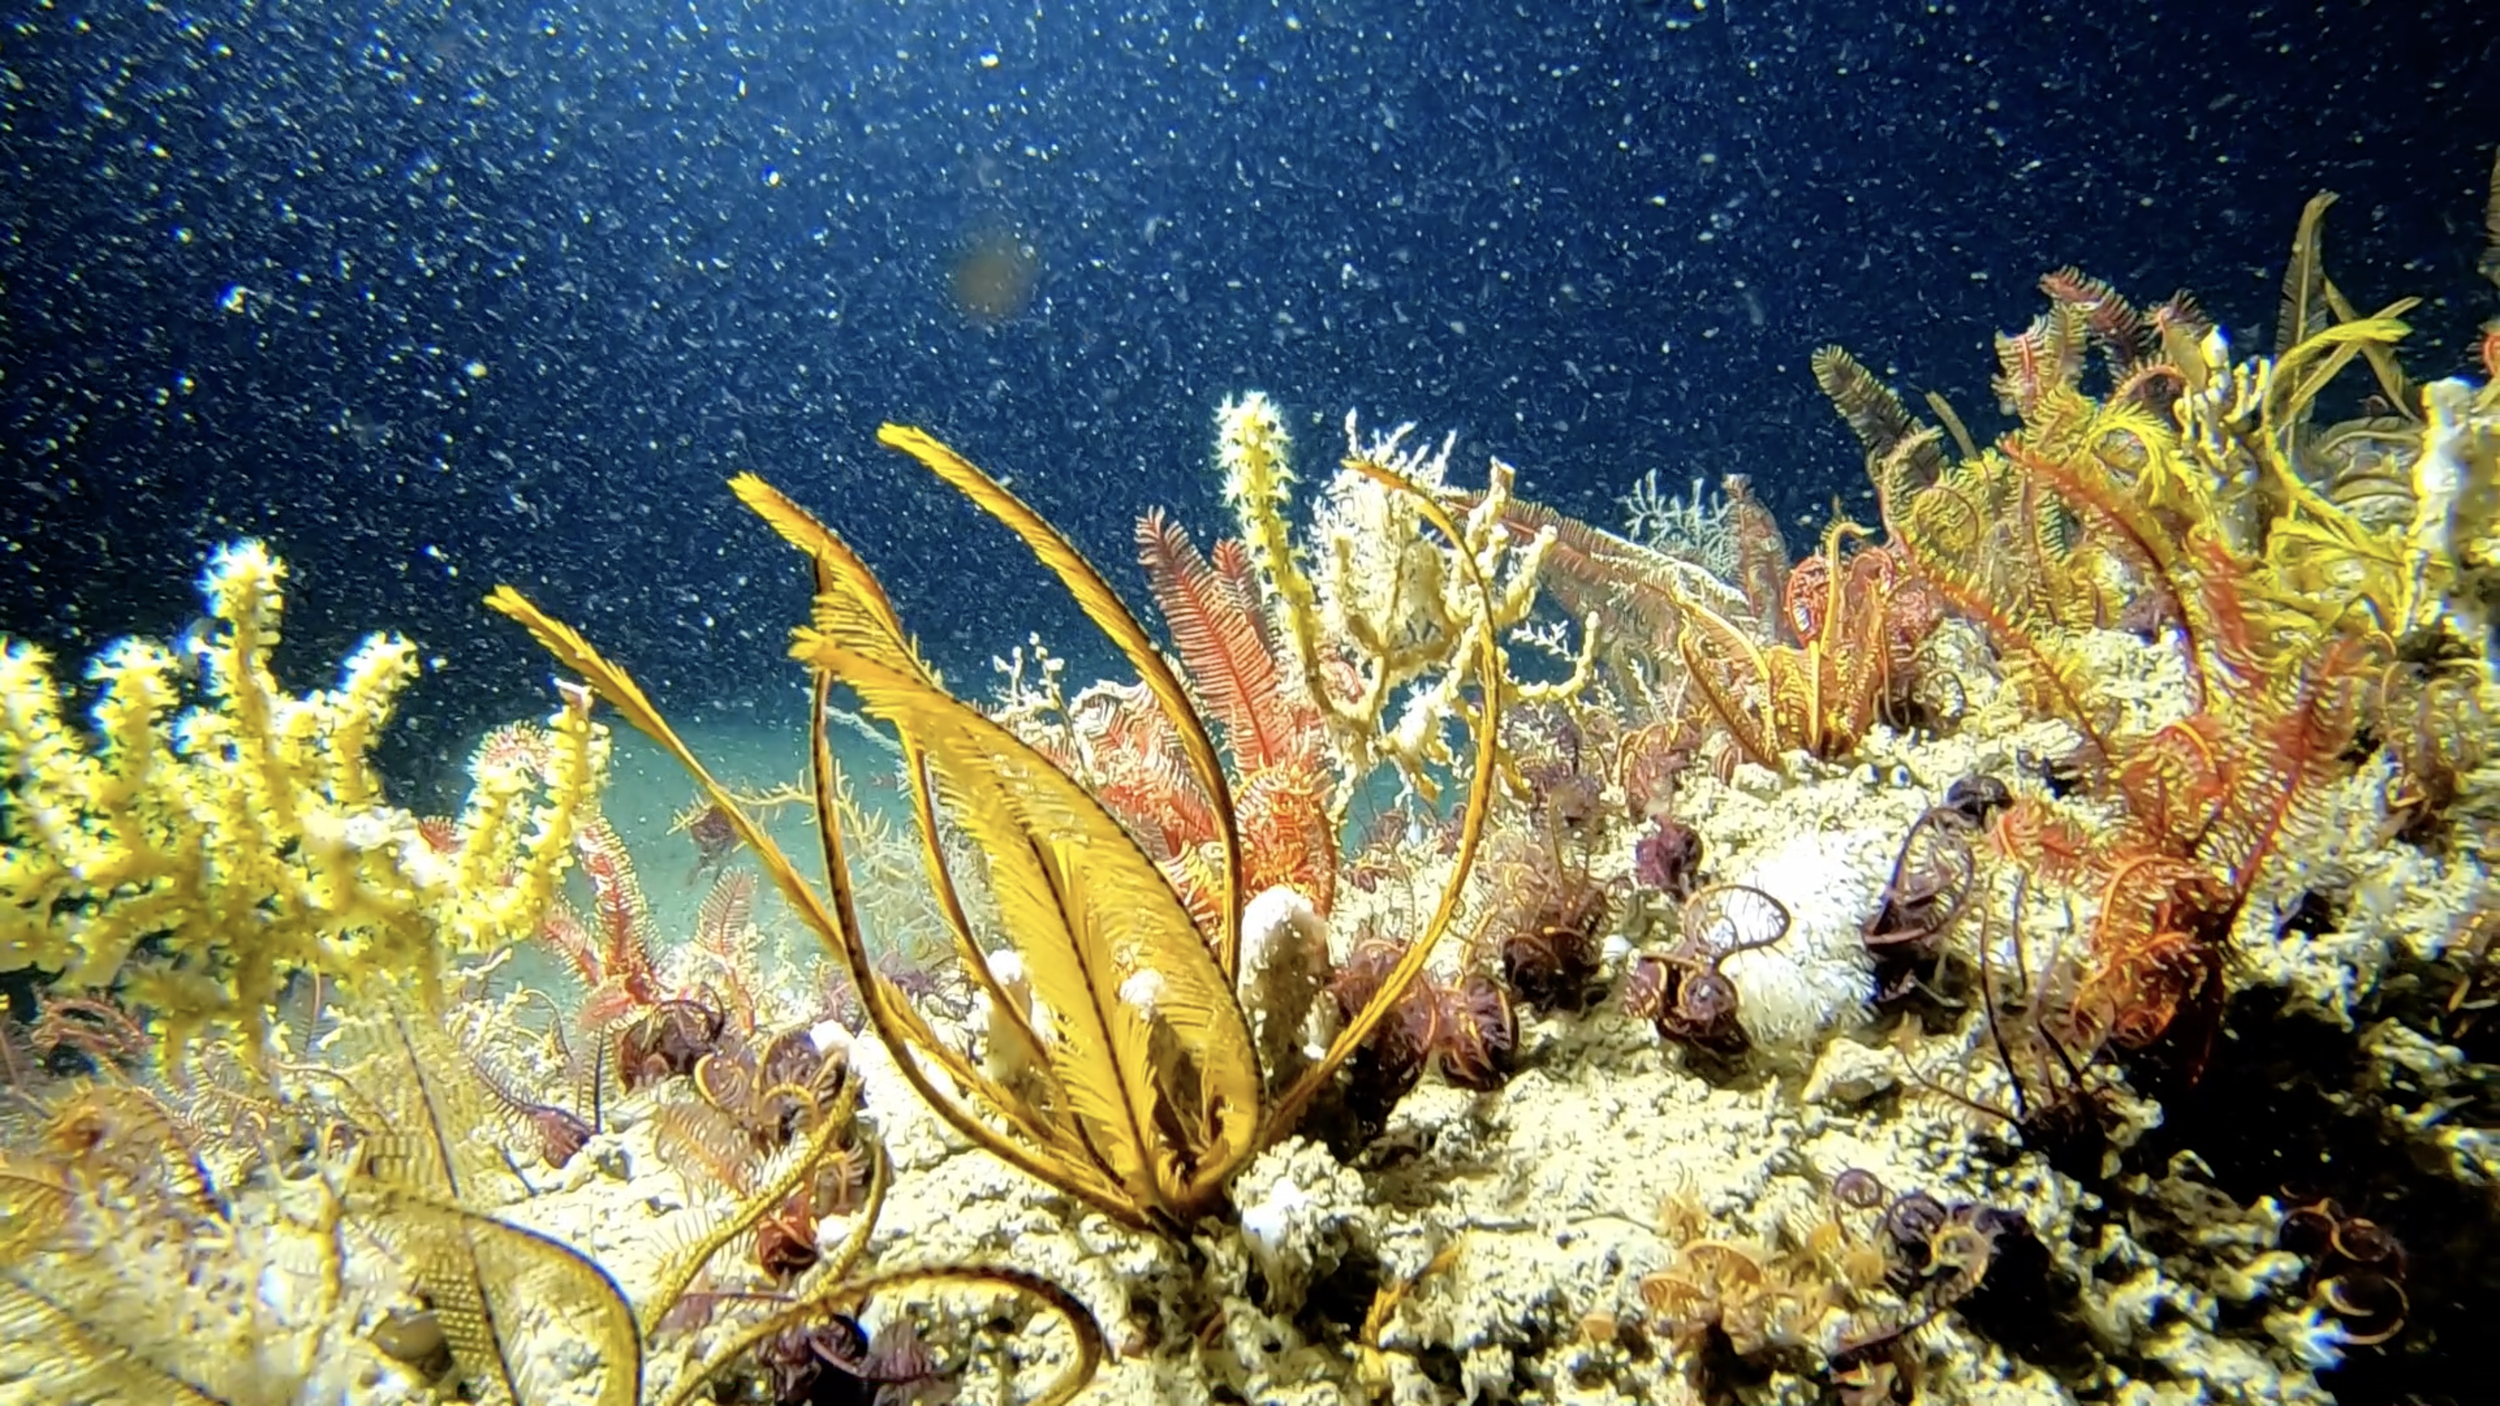 亞馬遜出海口的珊瑚礁被科學家喻為「自然寶藏」，這片珊瑚礁群由 30 多種不同種類的物種組成，廣達56,000平方公里，面積約1.5個臺灣，更可能是世界上最大珊瑚礁群之一，形成複雜且豐富的海洋生態系統。